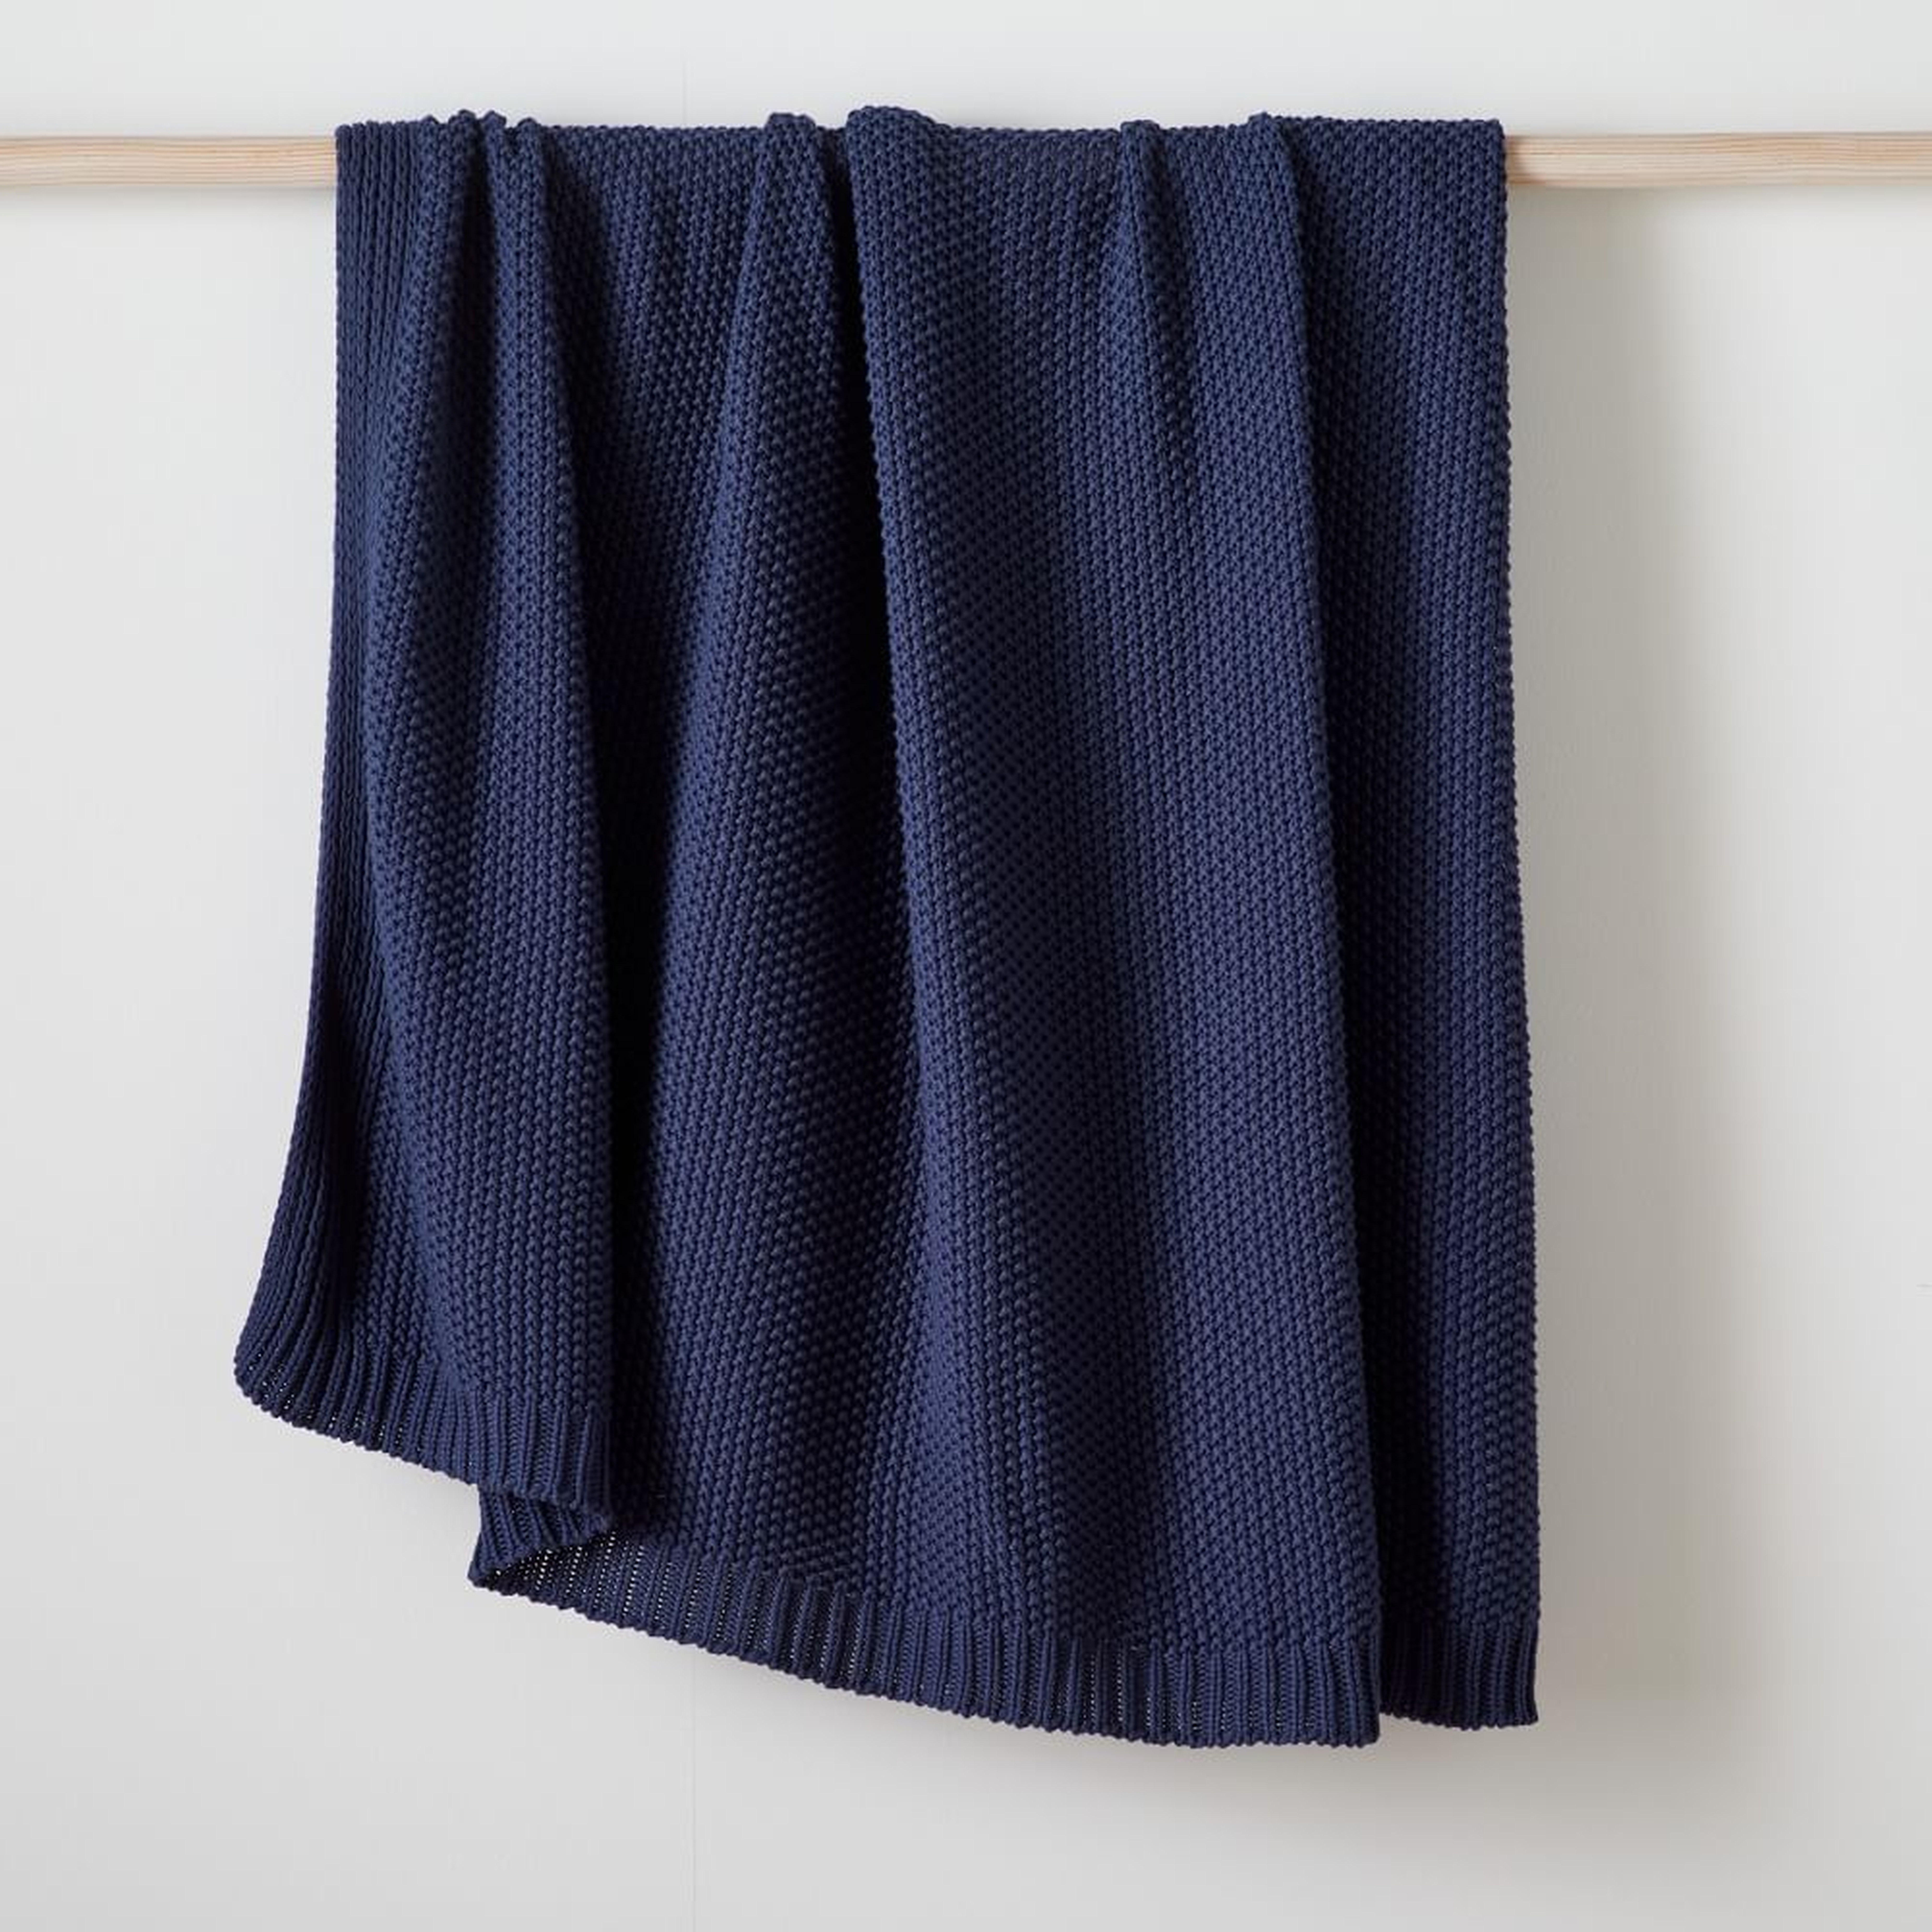 Cotton Knit Throw, 50"x60", Midnight - West Elm